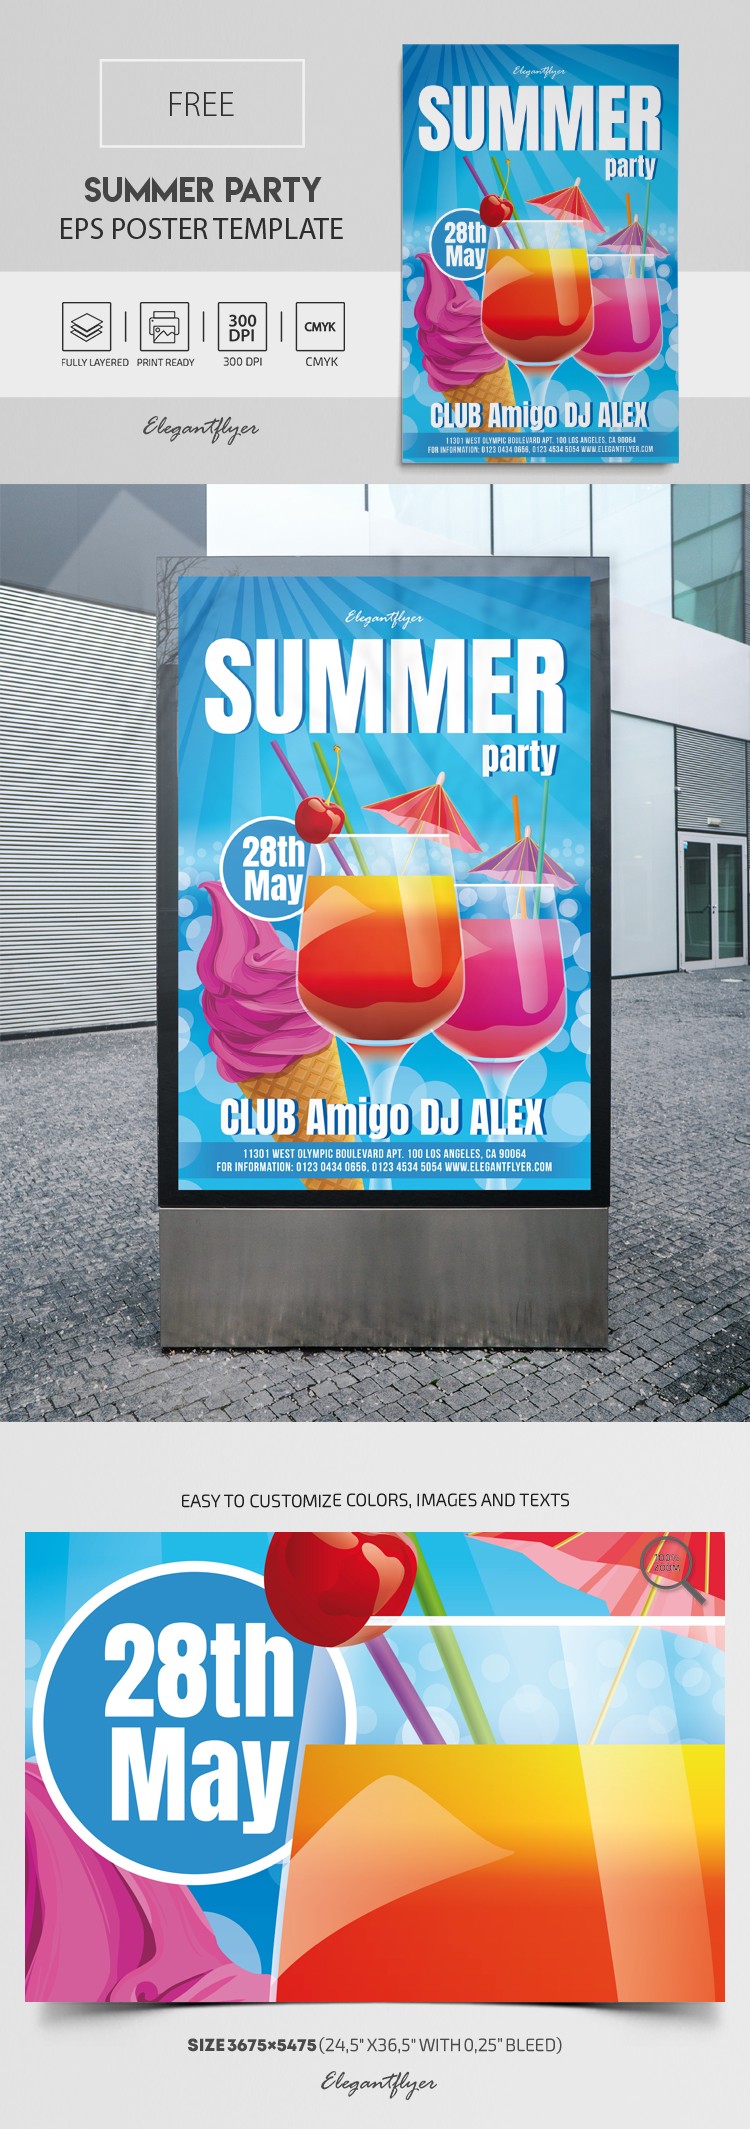 Cartaz da Festa de Verão EPS by ElegantFlyer